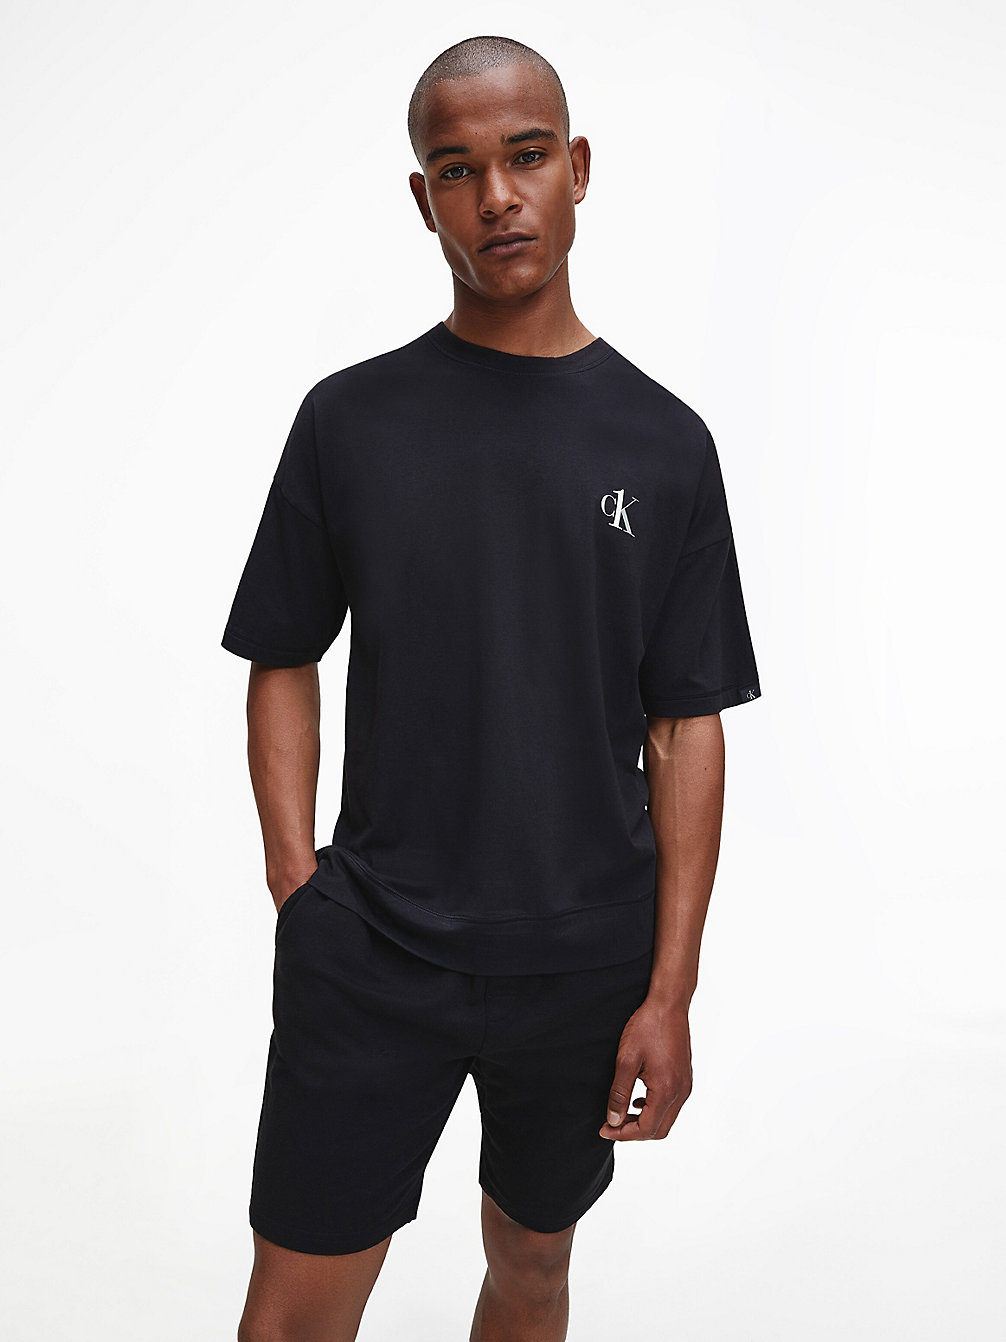 BLACK T-Shirt D'intérieur - CK One undefined hommes Calvin Klein